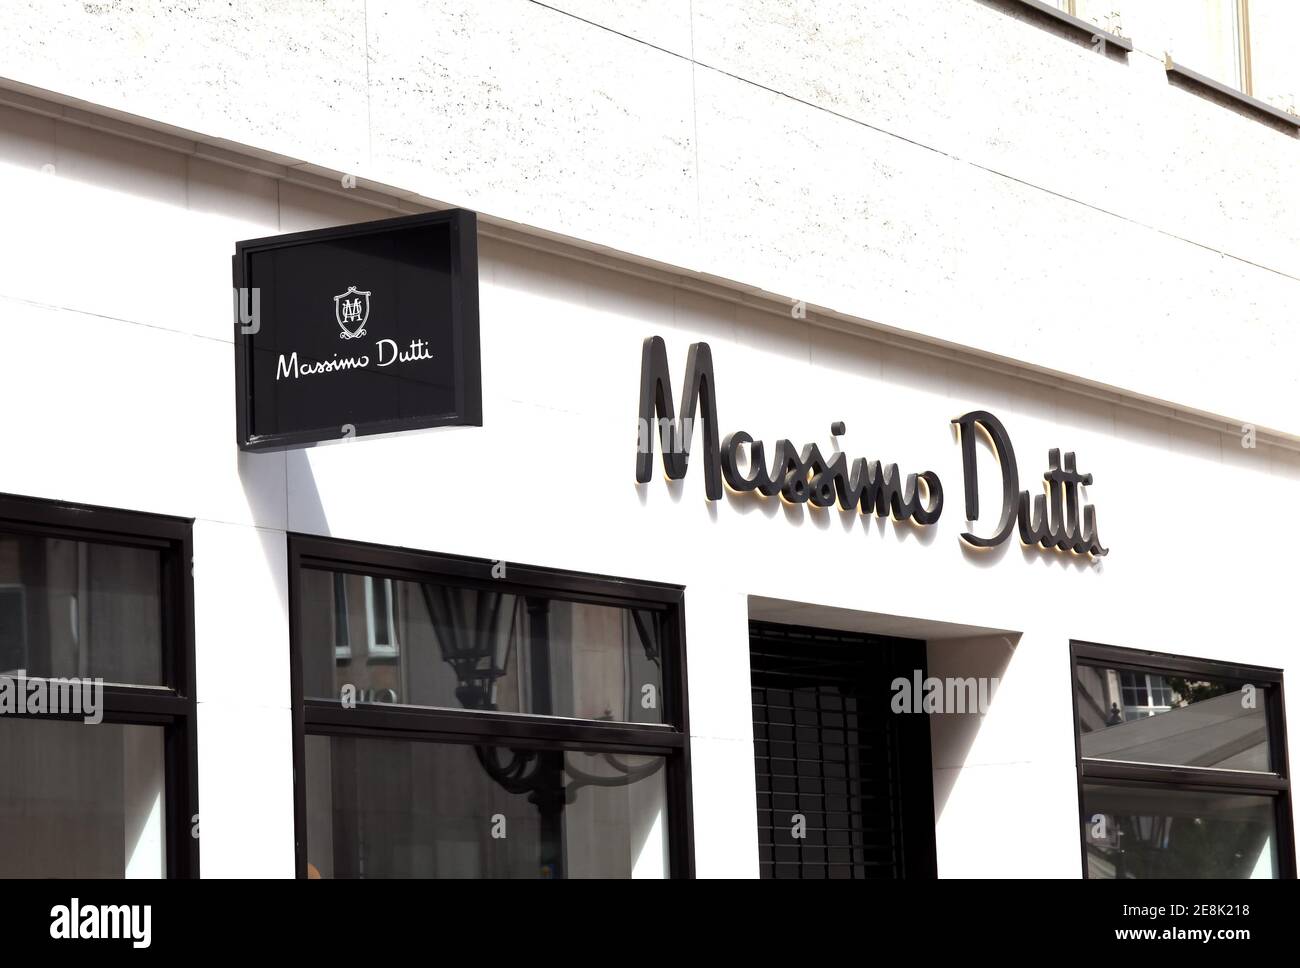 Nurnberg, Alemania : MASSIMO DUTTI, Massimo Dutti es una empresa de  fabricación de ropa que forma parte del grupo Inditex Fotografía de stock -  Alamy